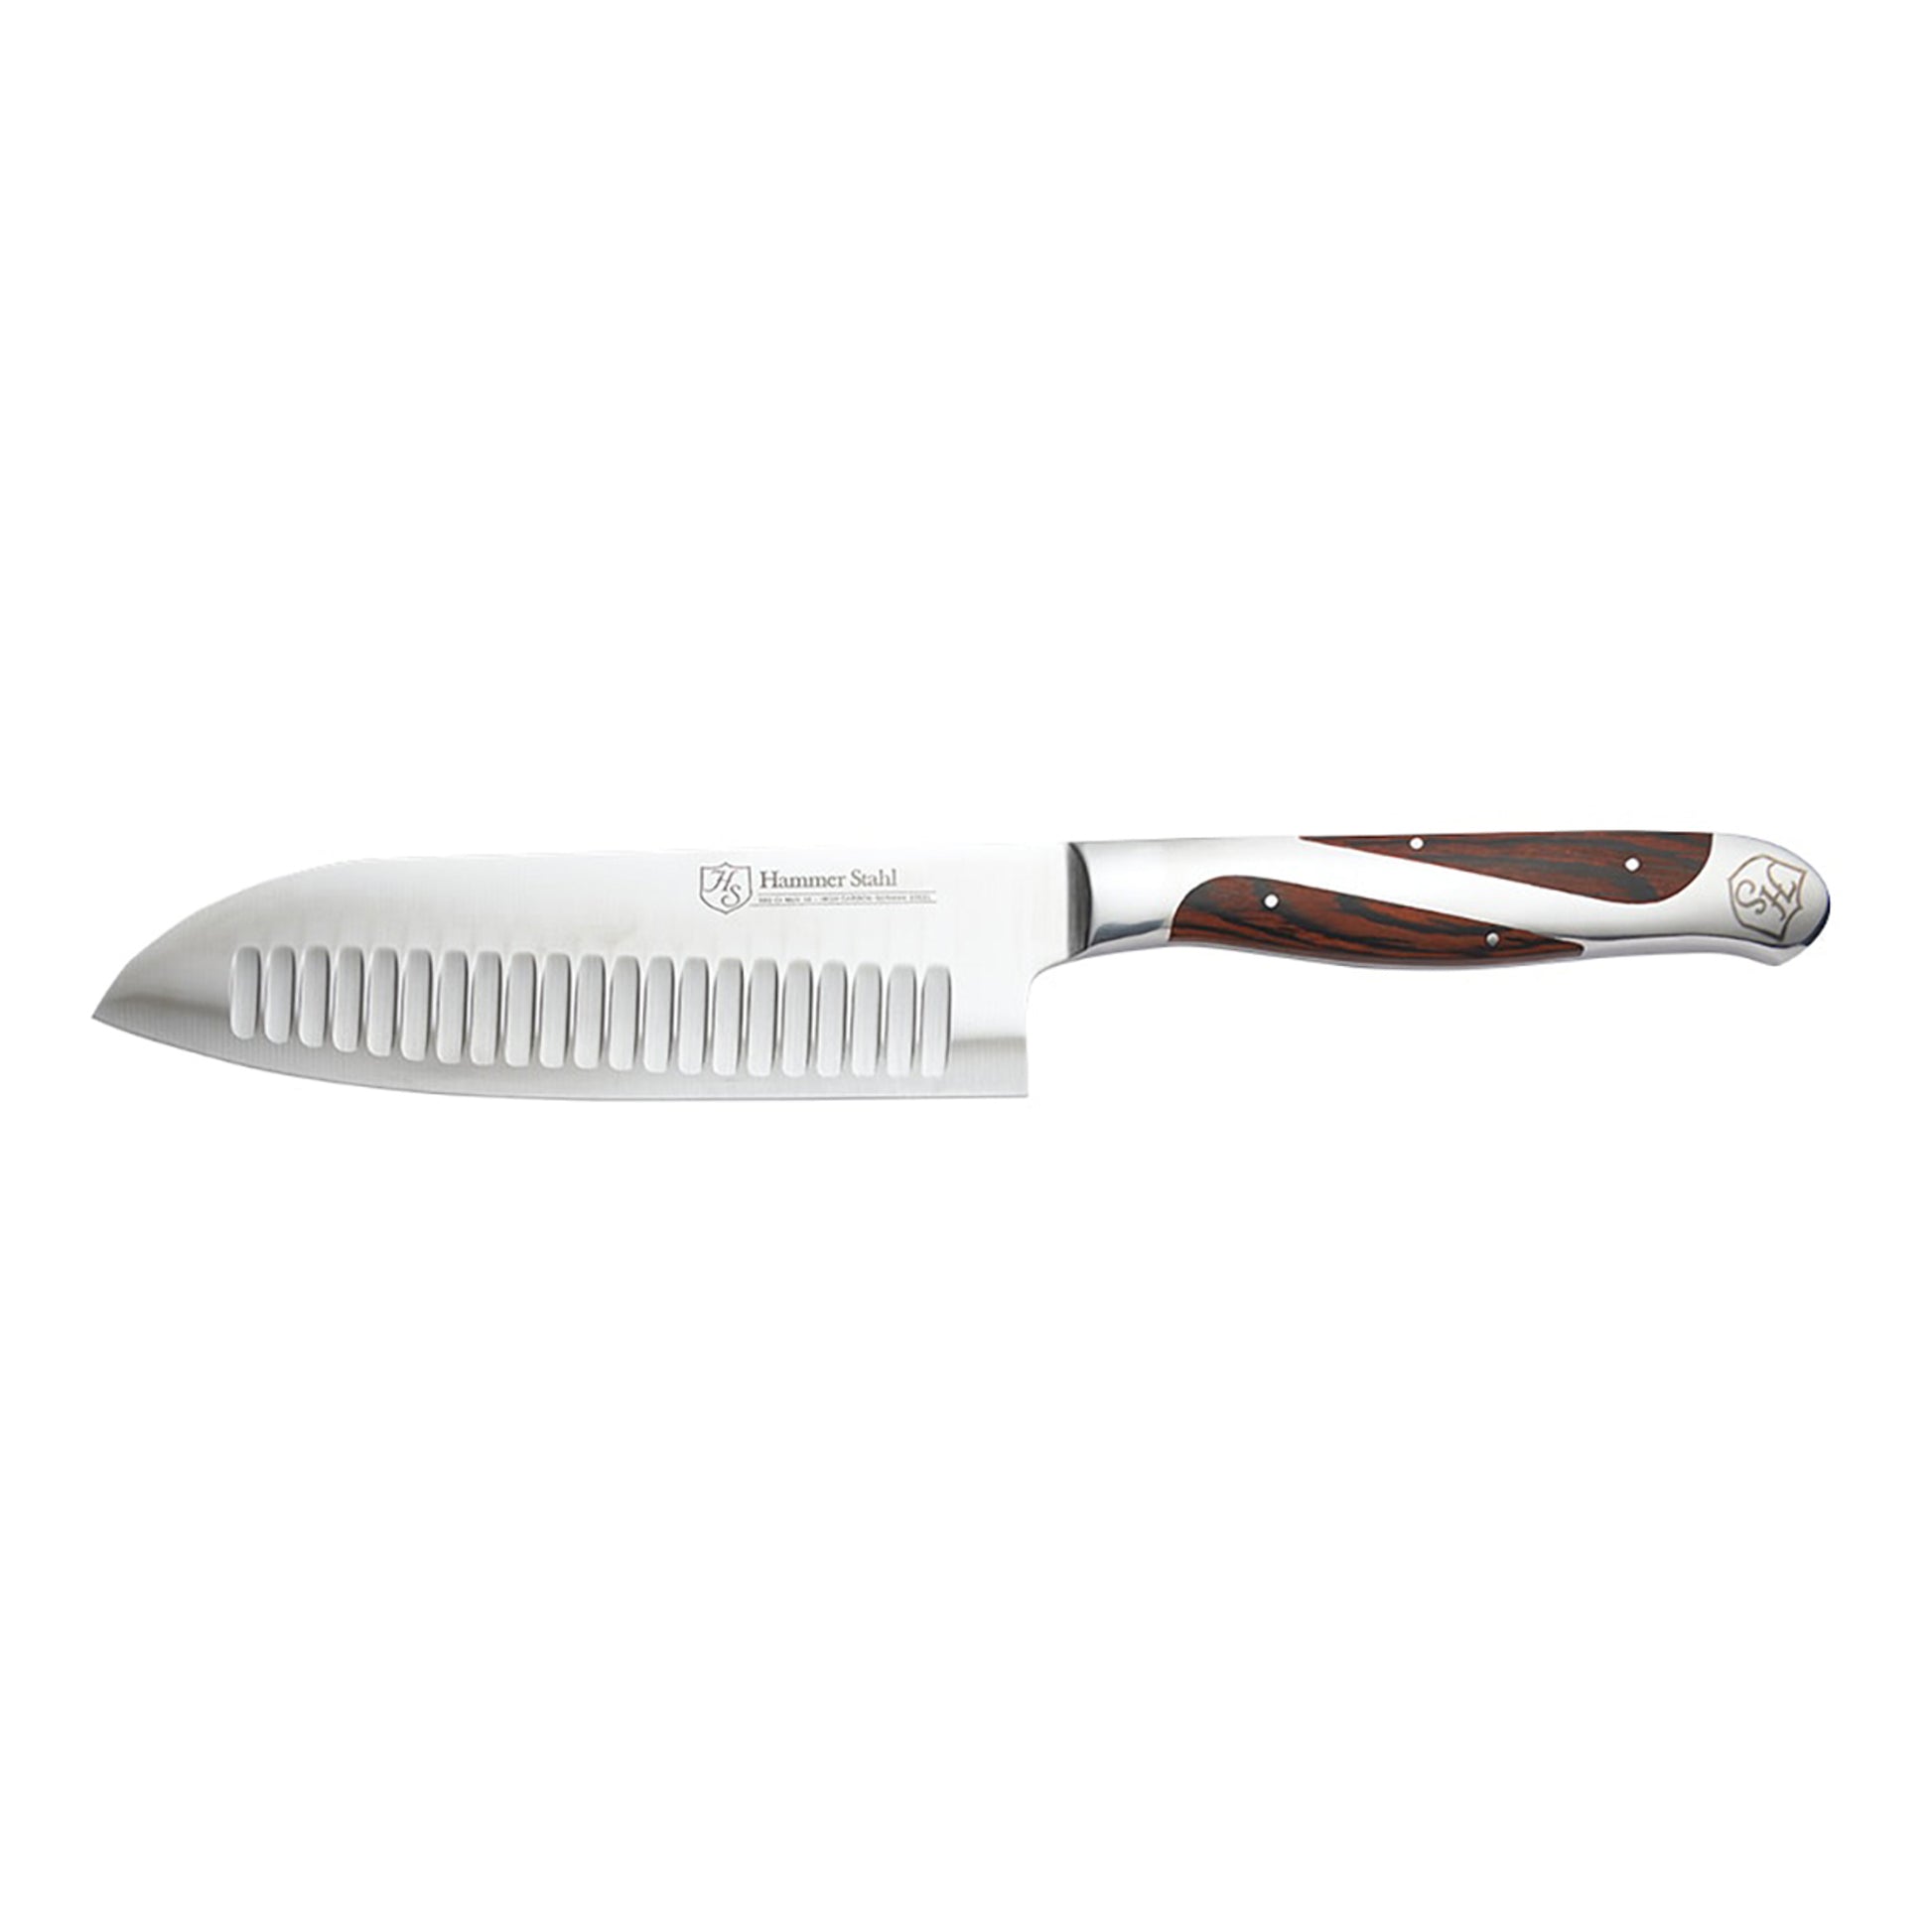 https://www.jkadams.com/cdn/shop/files/jk-adams-hammer-stahl-5-inch-santoku-knife.jpg?v=1684784972&width=1946